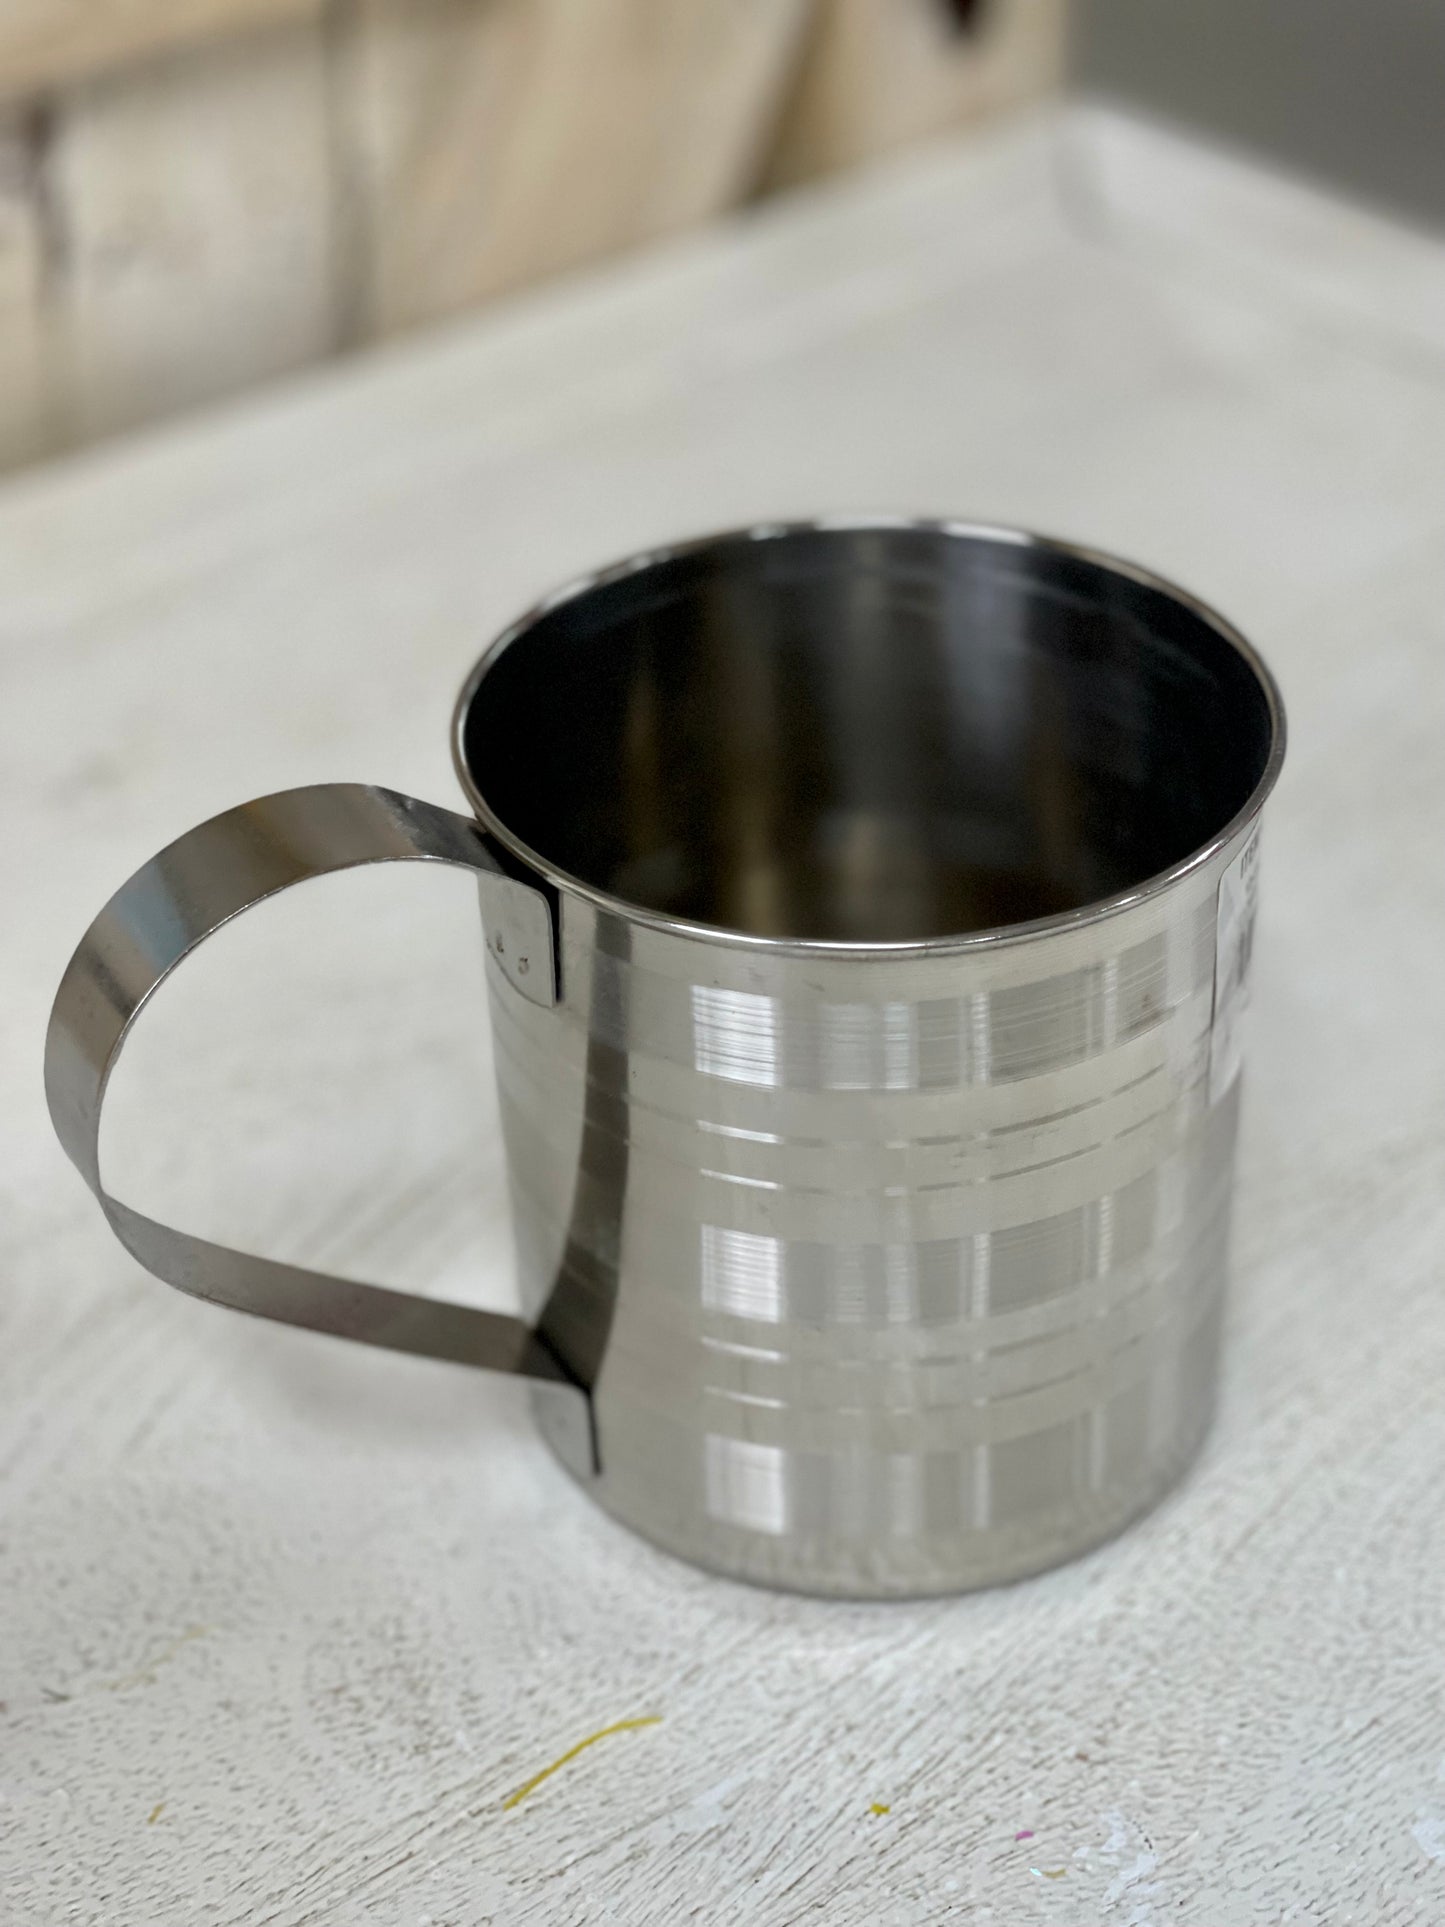 12cm Metal Mug With A Handle